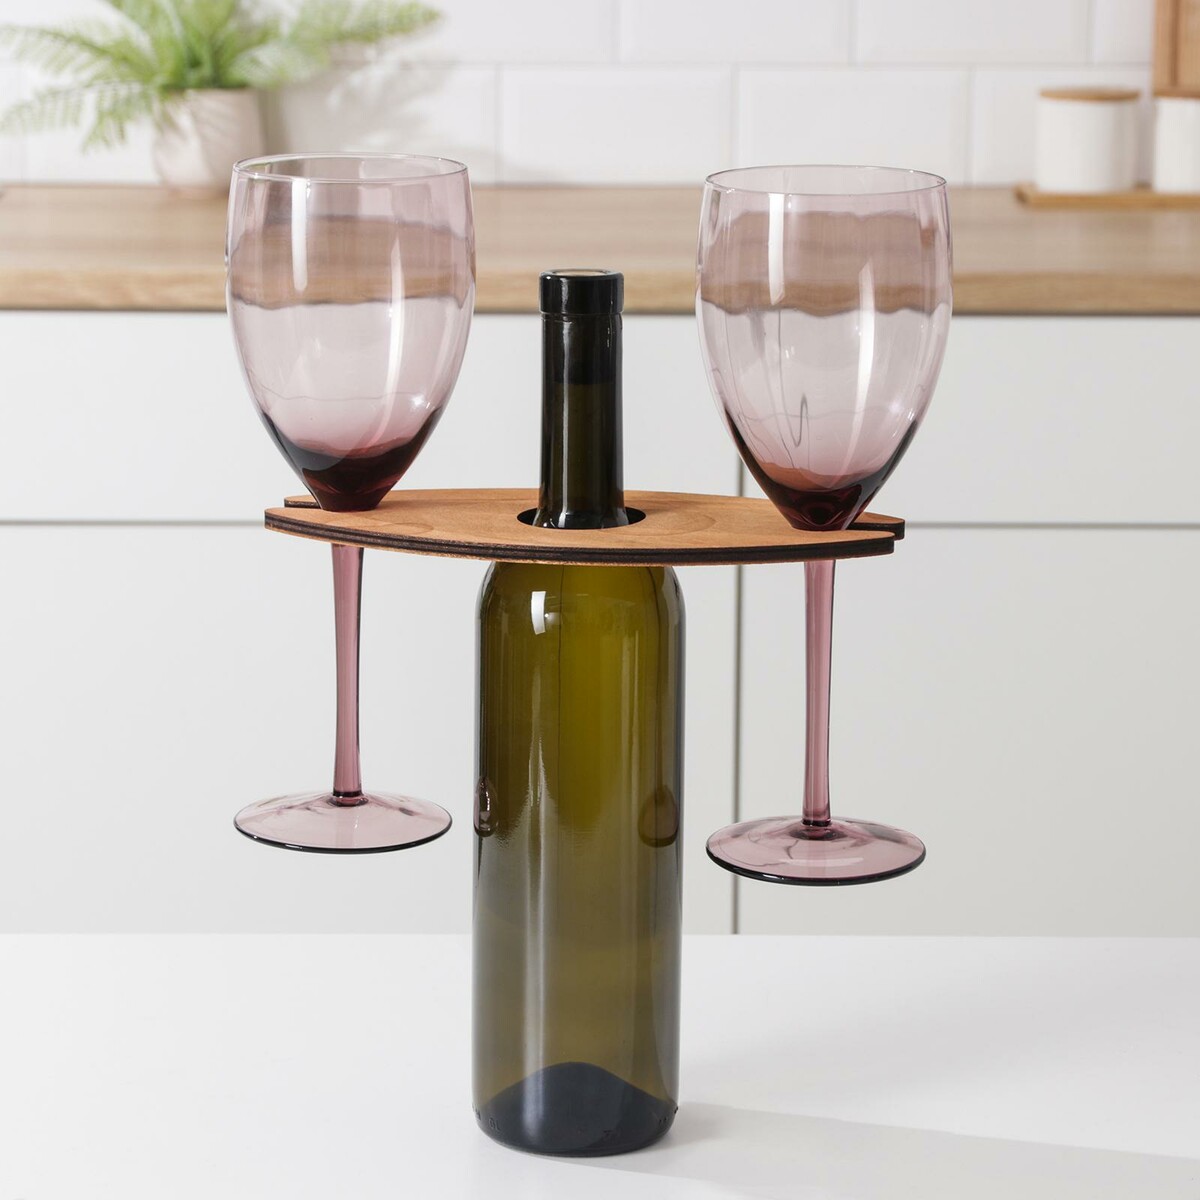 Подставка для вина и двух бокалов, 10×22×1 см подставка для вина и закусок изабелла раскладная массив ясеня